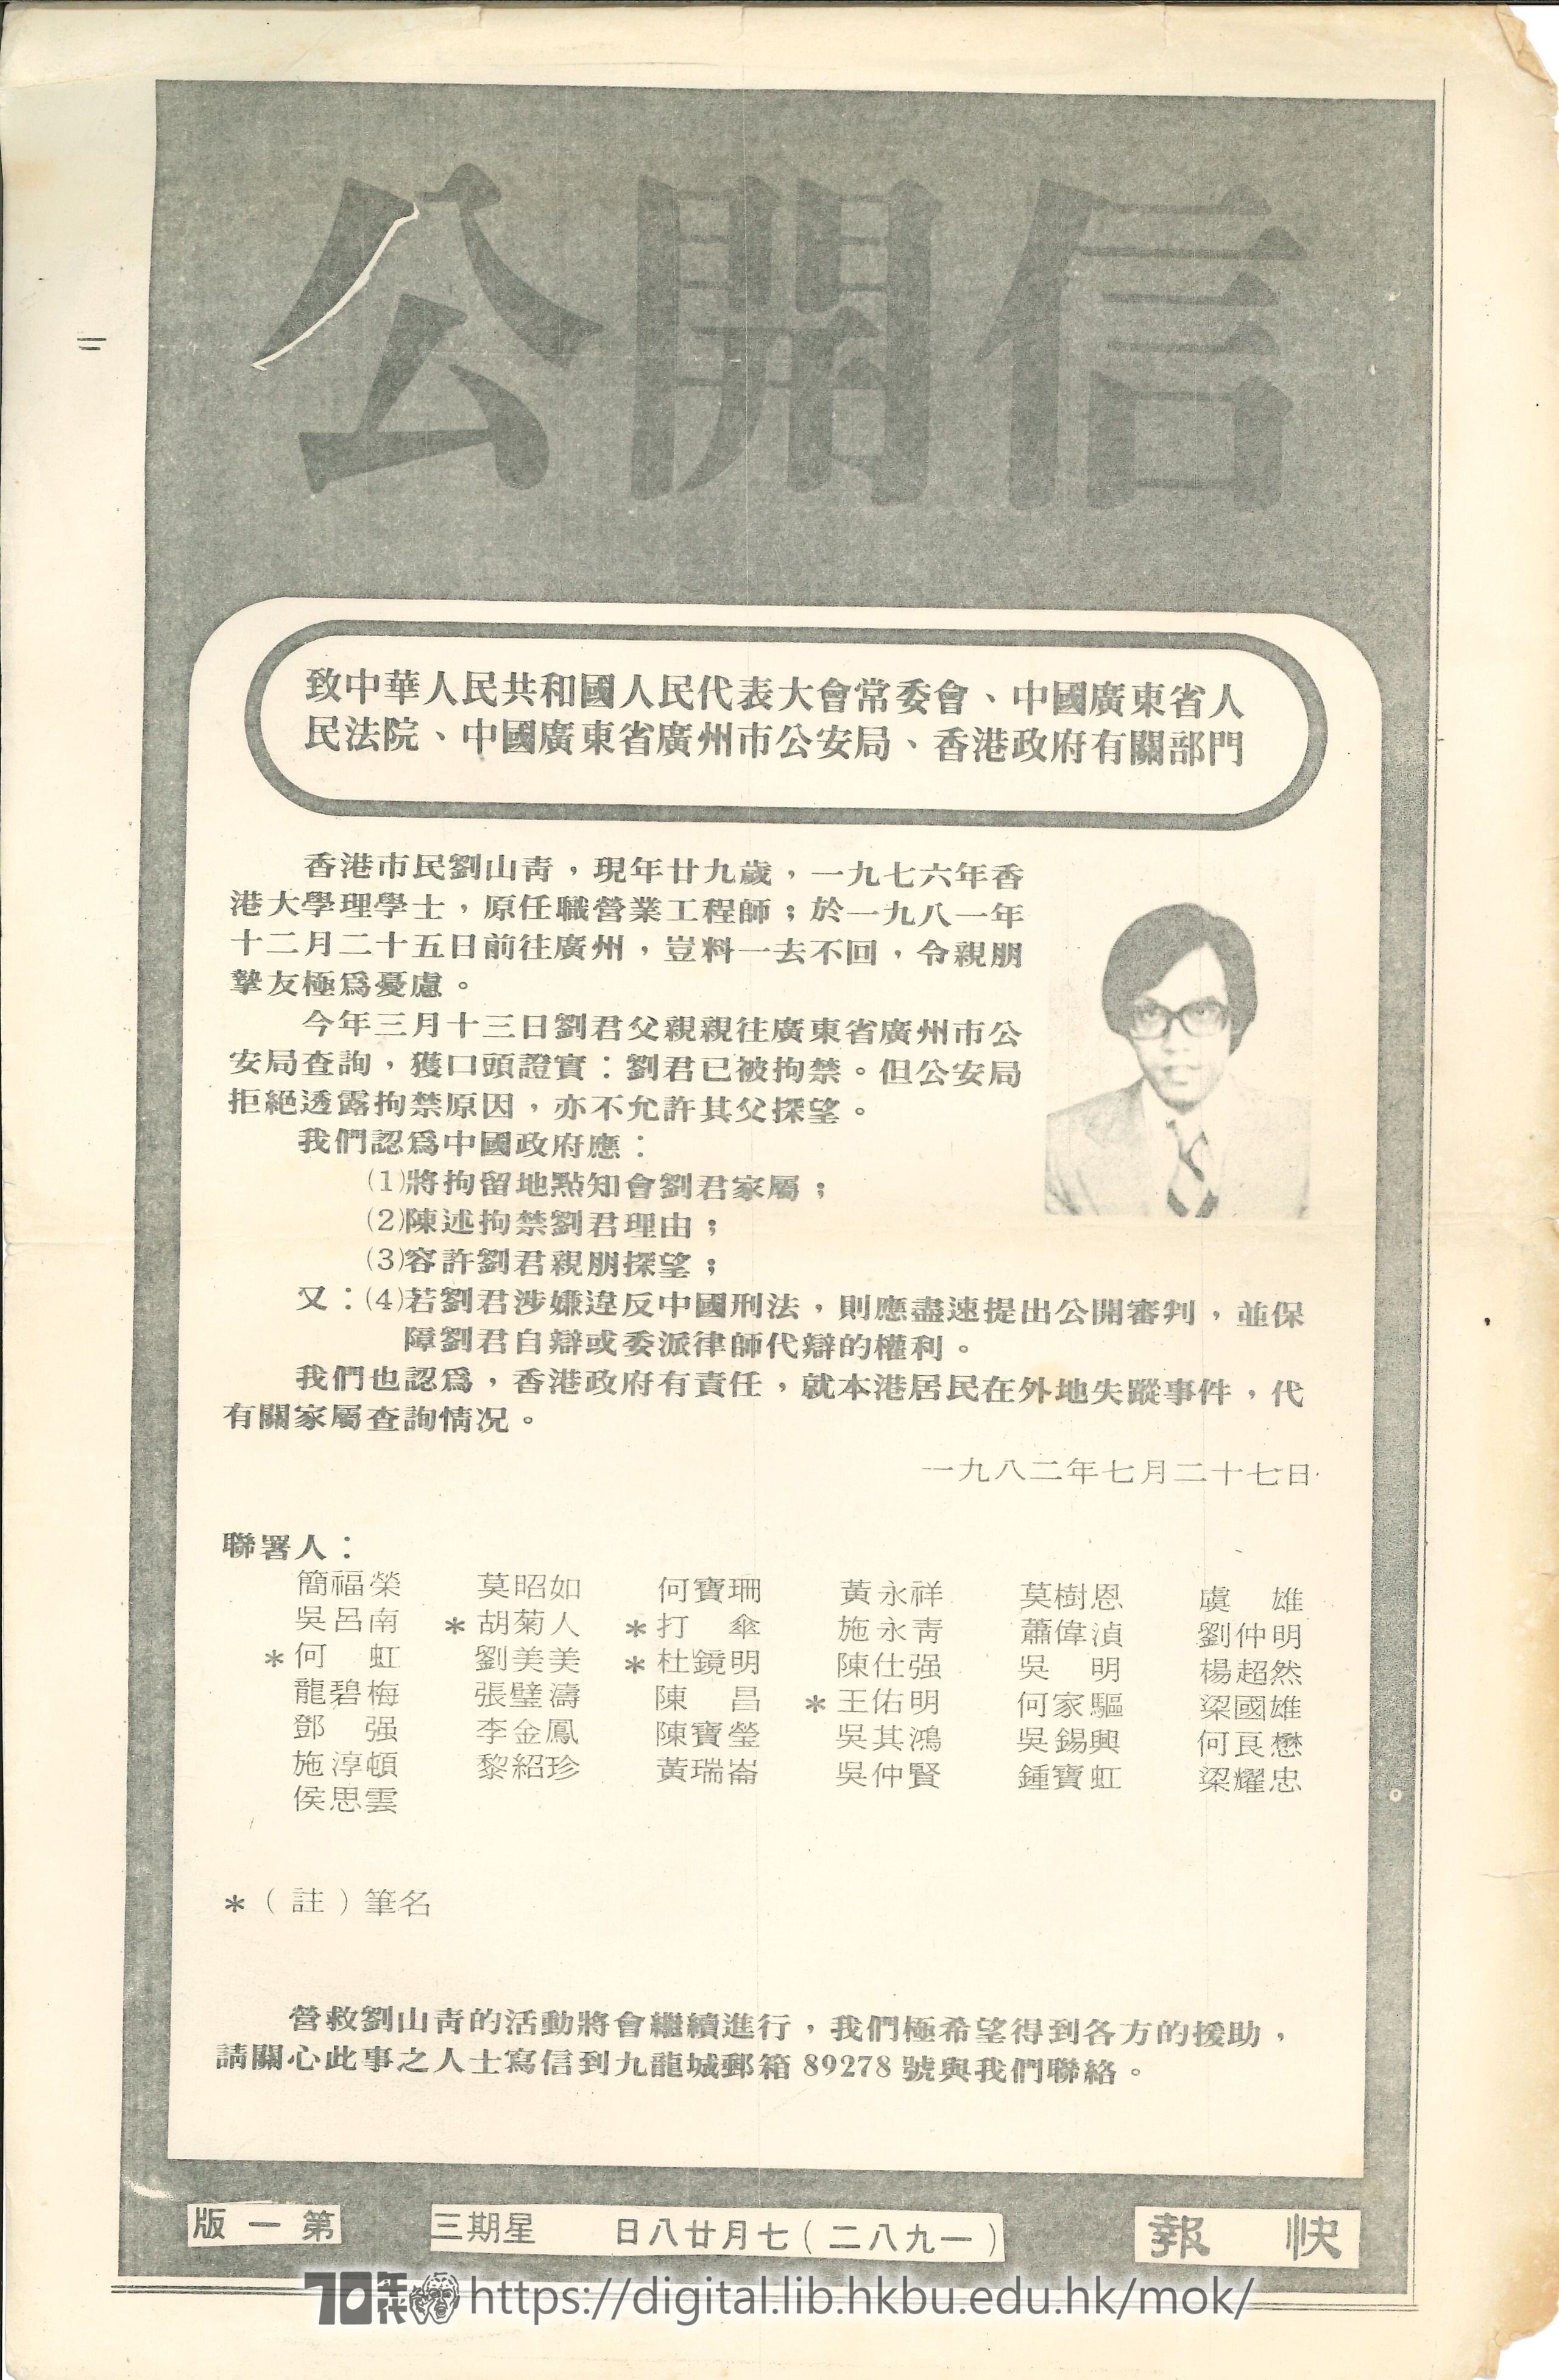   剪報（快報）28/7/1982 公開信  